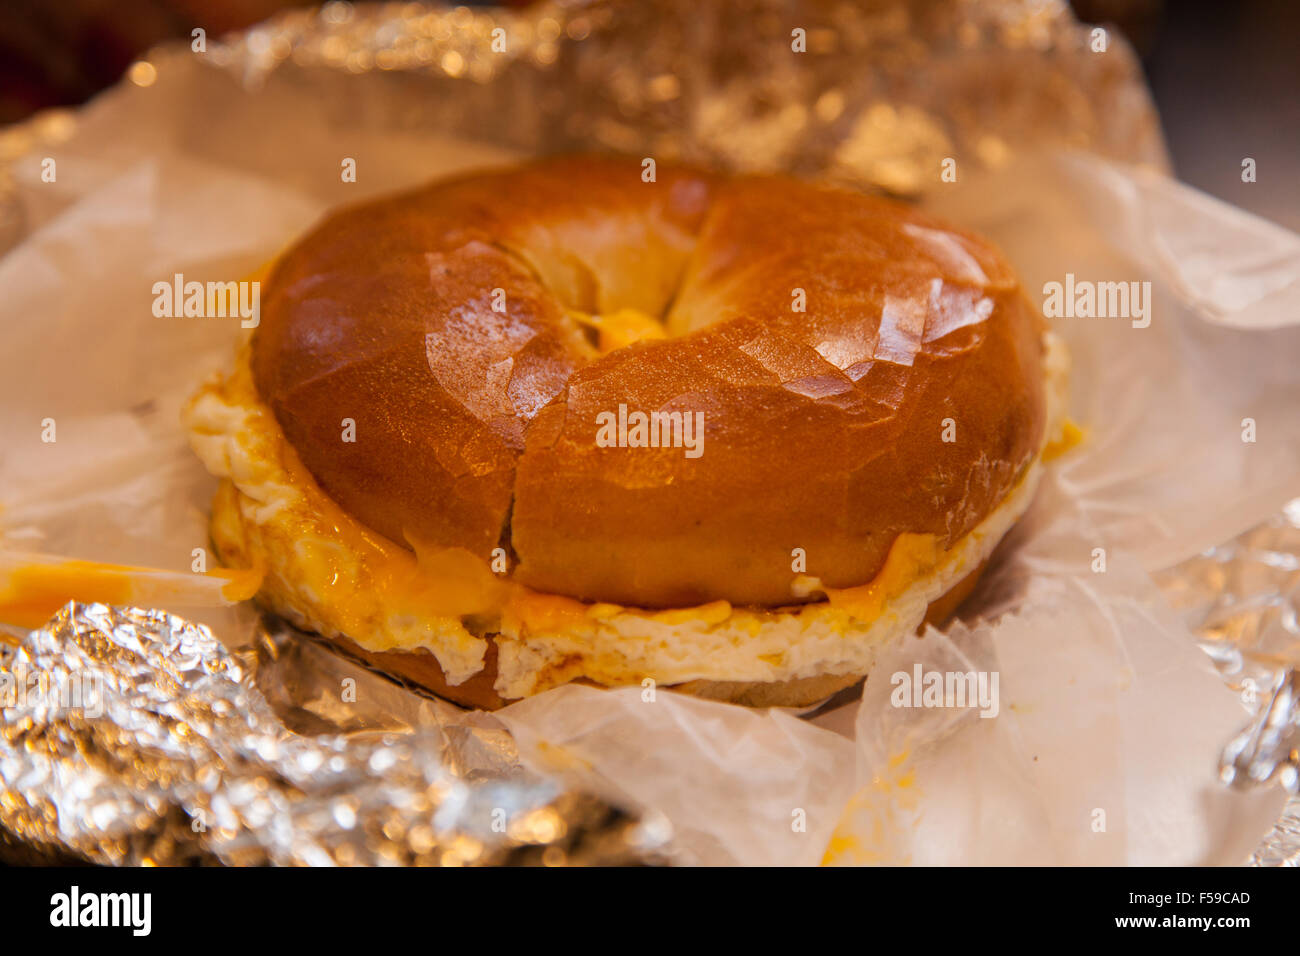 Ei und Käse getoasteten Bagel Dali Markt Feinkost, 7th Avenue, New York City, Vereinigte Staaten von Amerika. Stockfoto